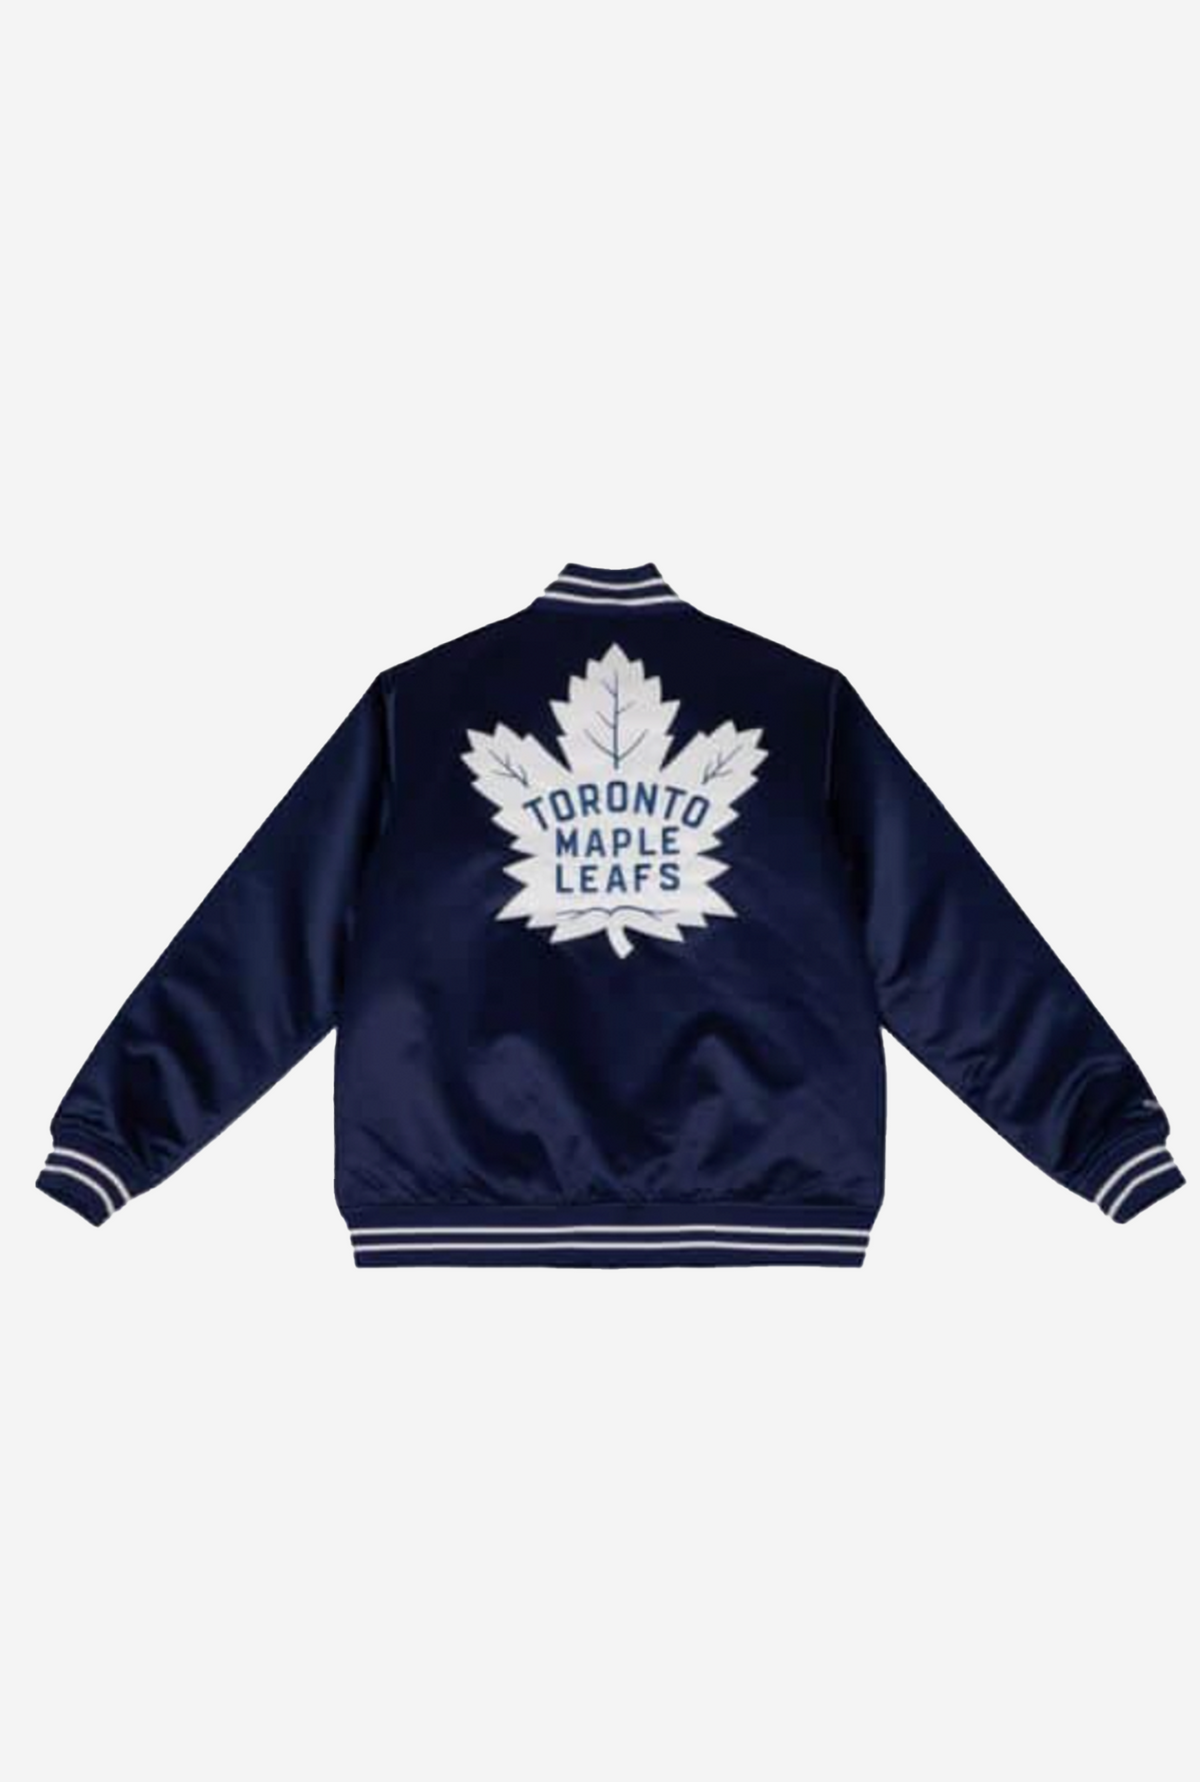 Toronto Maple Leafs Heavyweight Satin Jacket - Navy